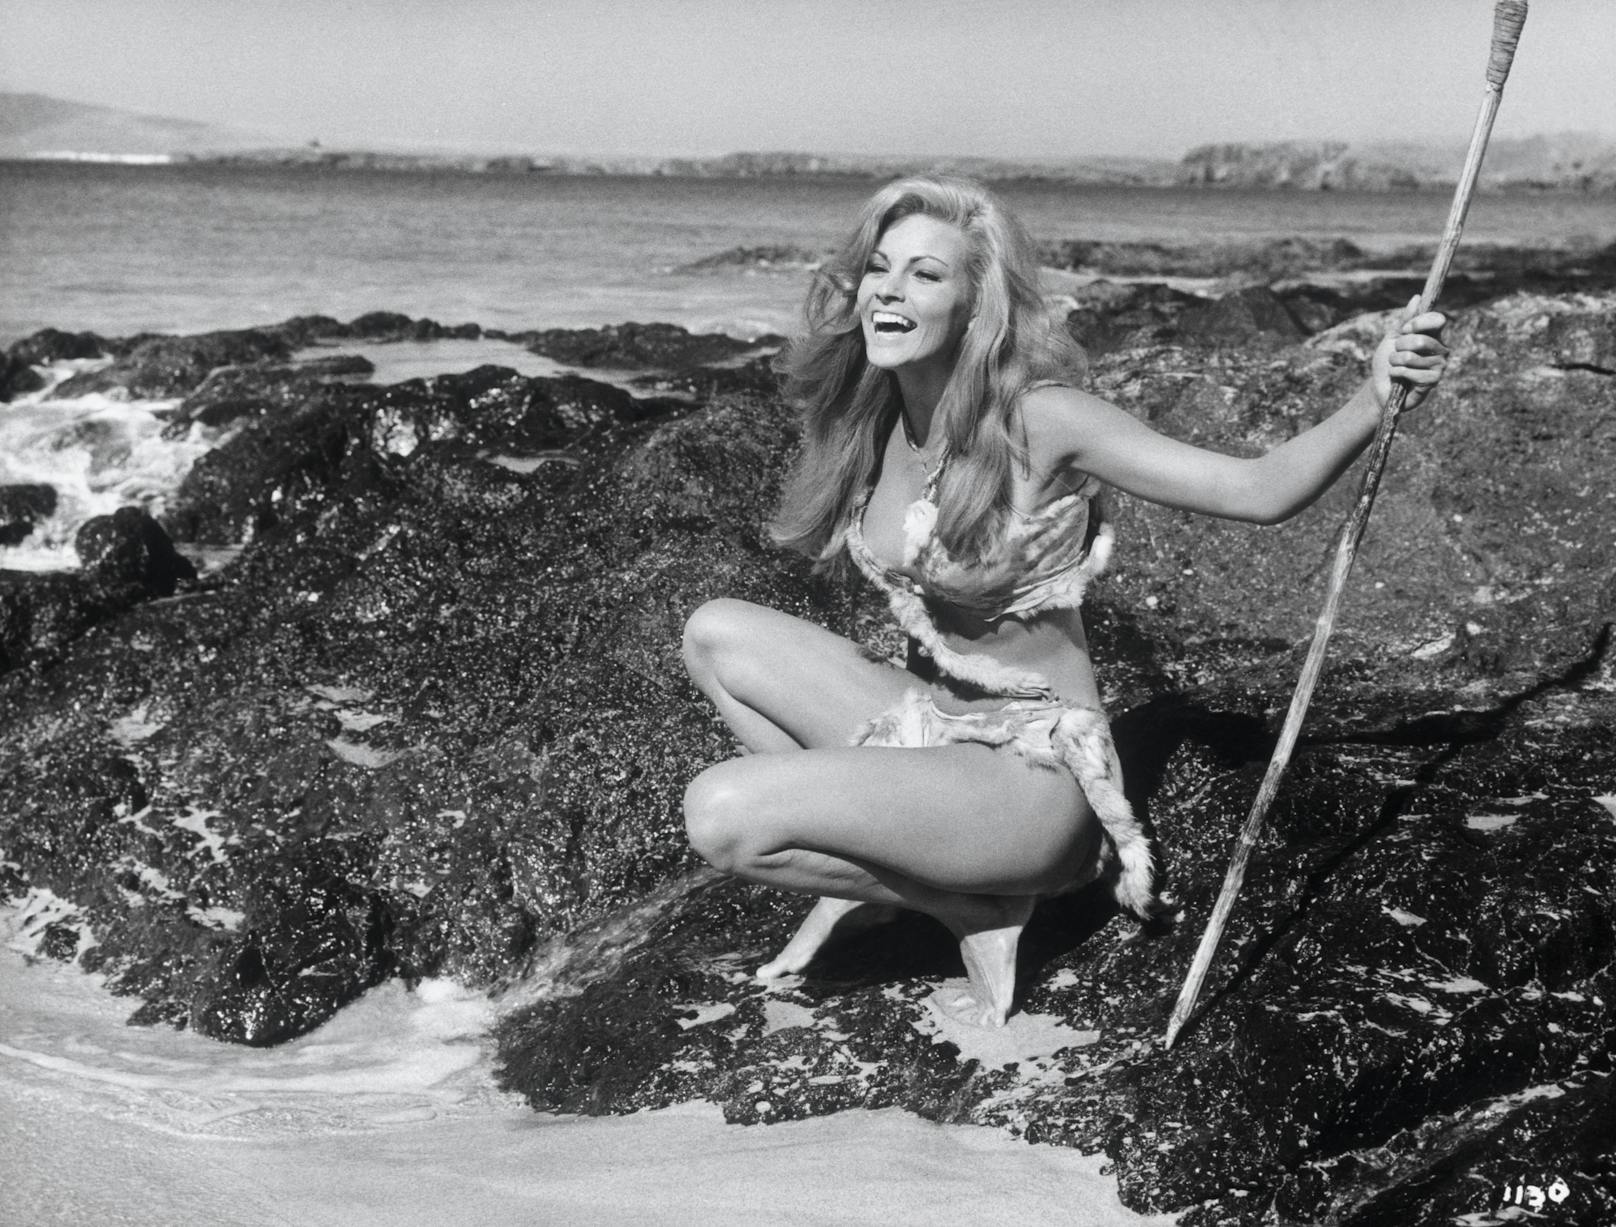 Szenenbilder von <strong>Raquel Welch</strong> in "One Million Years B.C." (deutsch: Eine Million Jahre vor unserer Zeit) aus dem Jahr 1966.